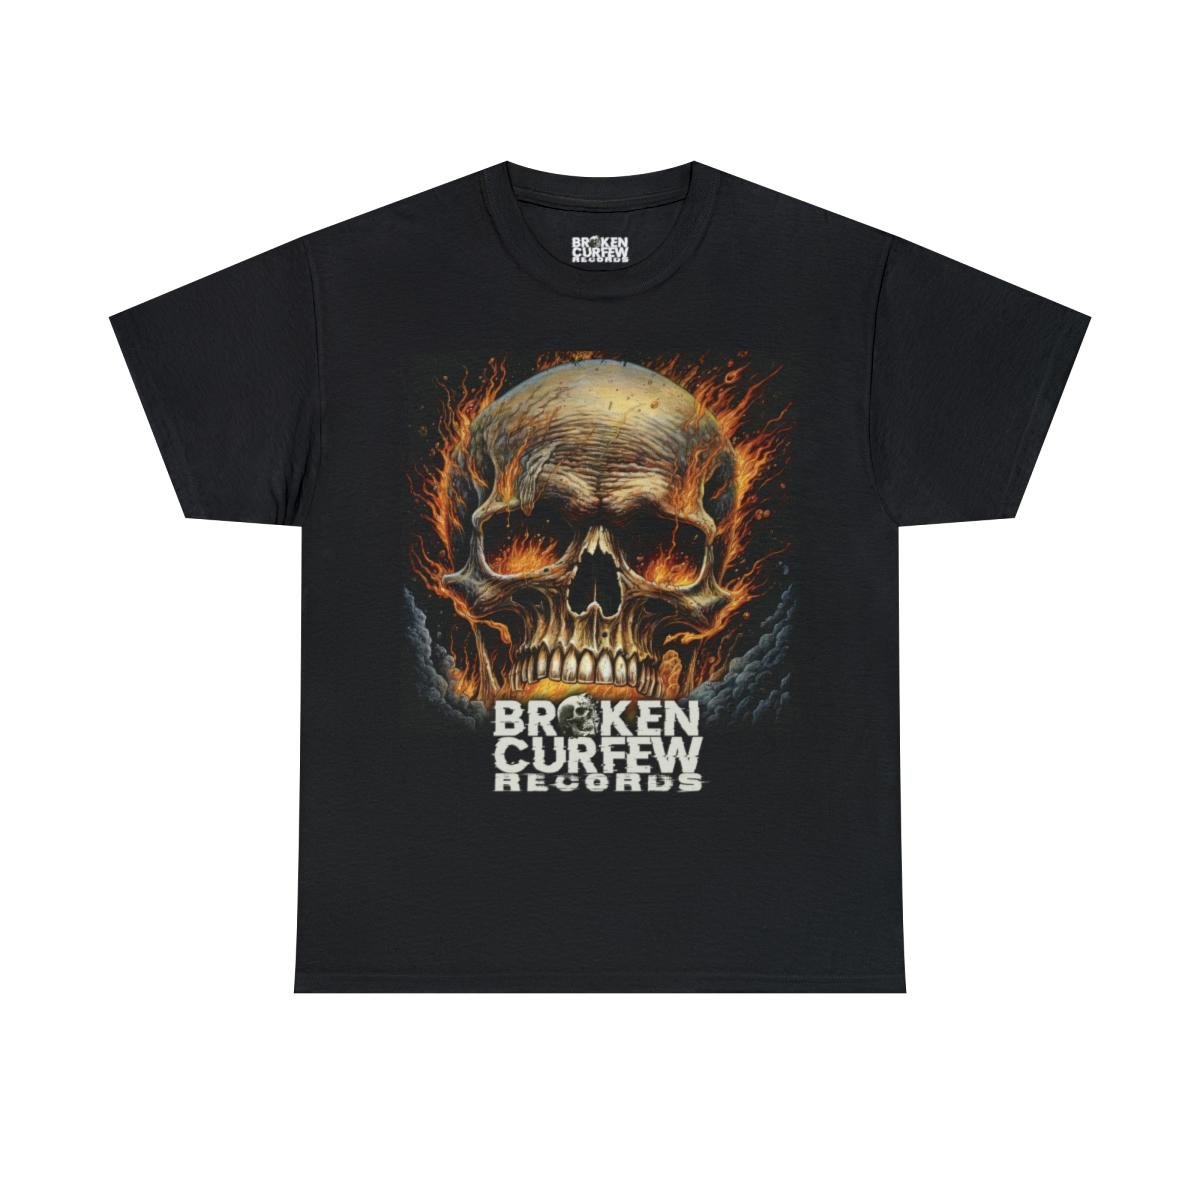 Broken Curfew Records – Flaming Skull Short Sleeve Tshirt